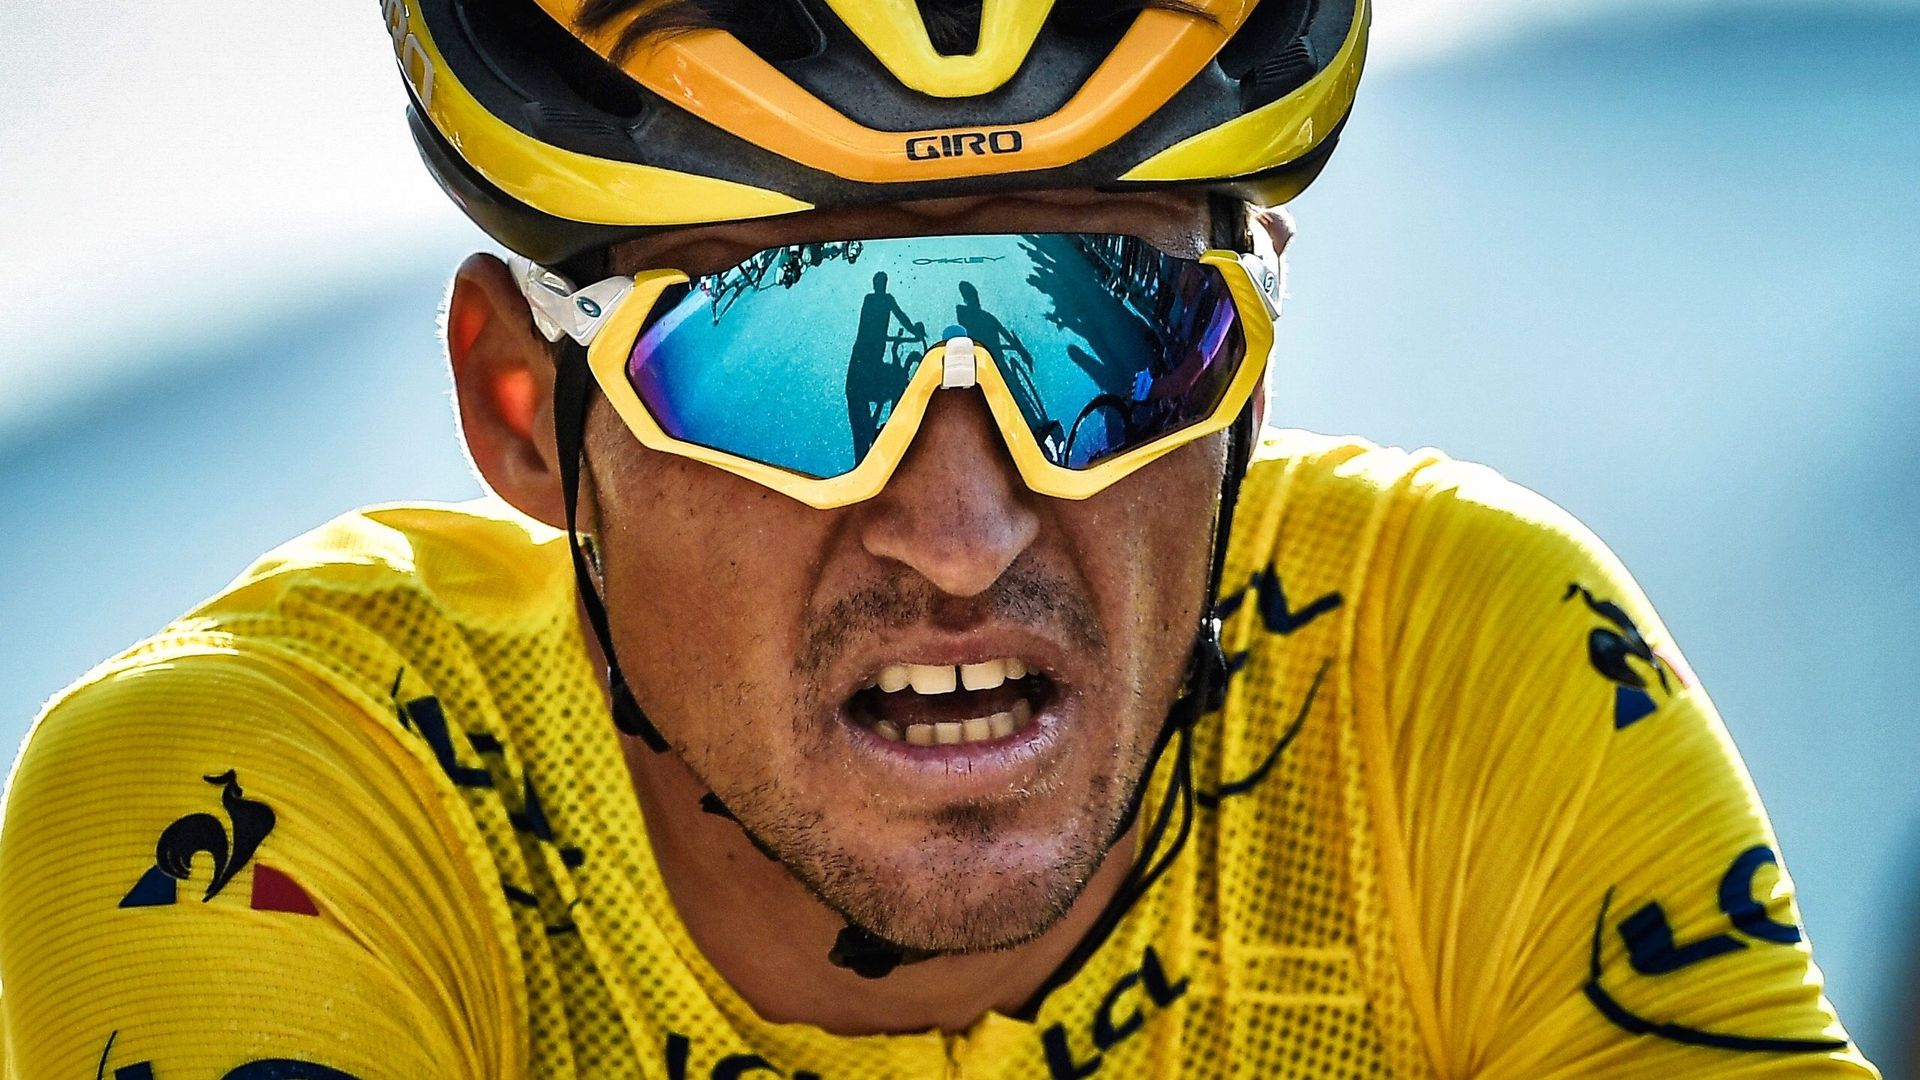 Le Belge Greg Van Avermaet, porteur du maillot jaune lors de la 105eme édition du Tour de France. Il finira 4ème au classement géneral à Paris, juste au pied du podium.